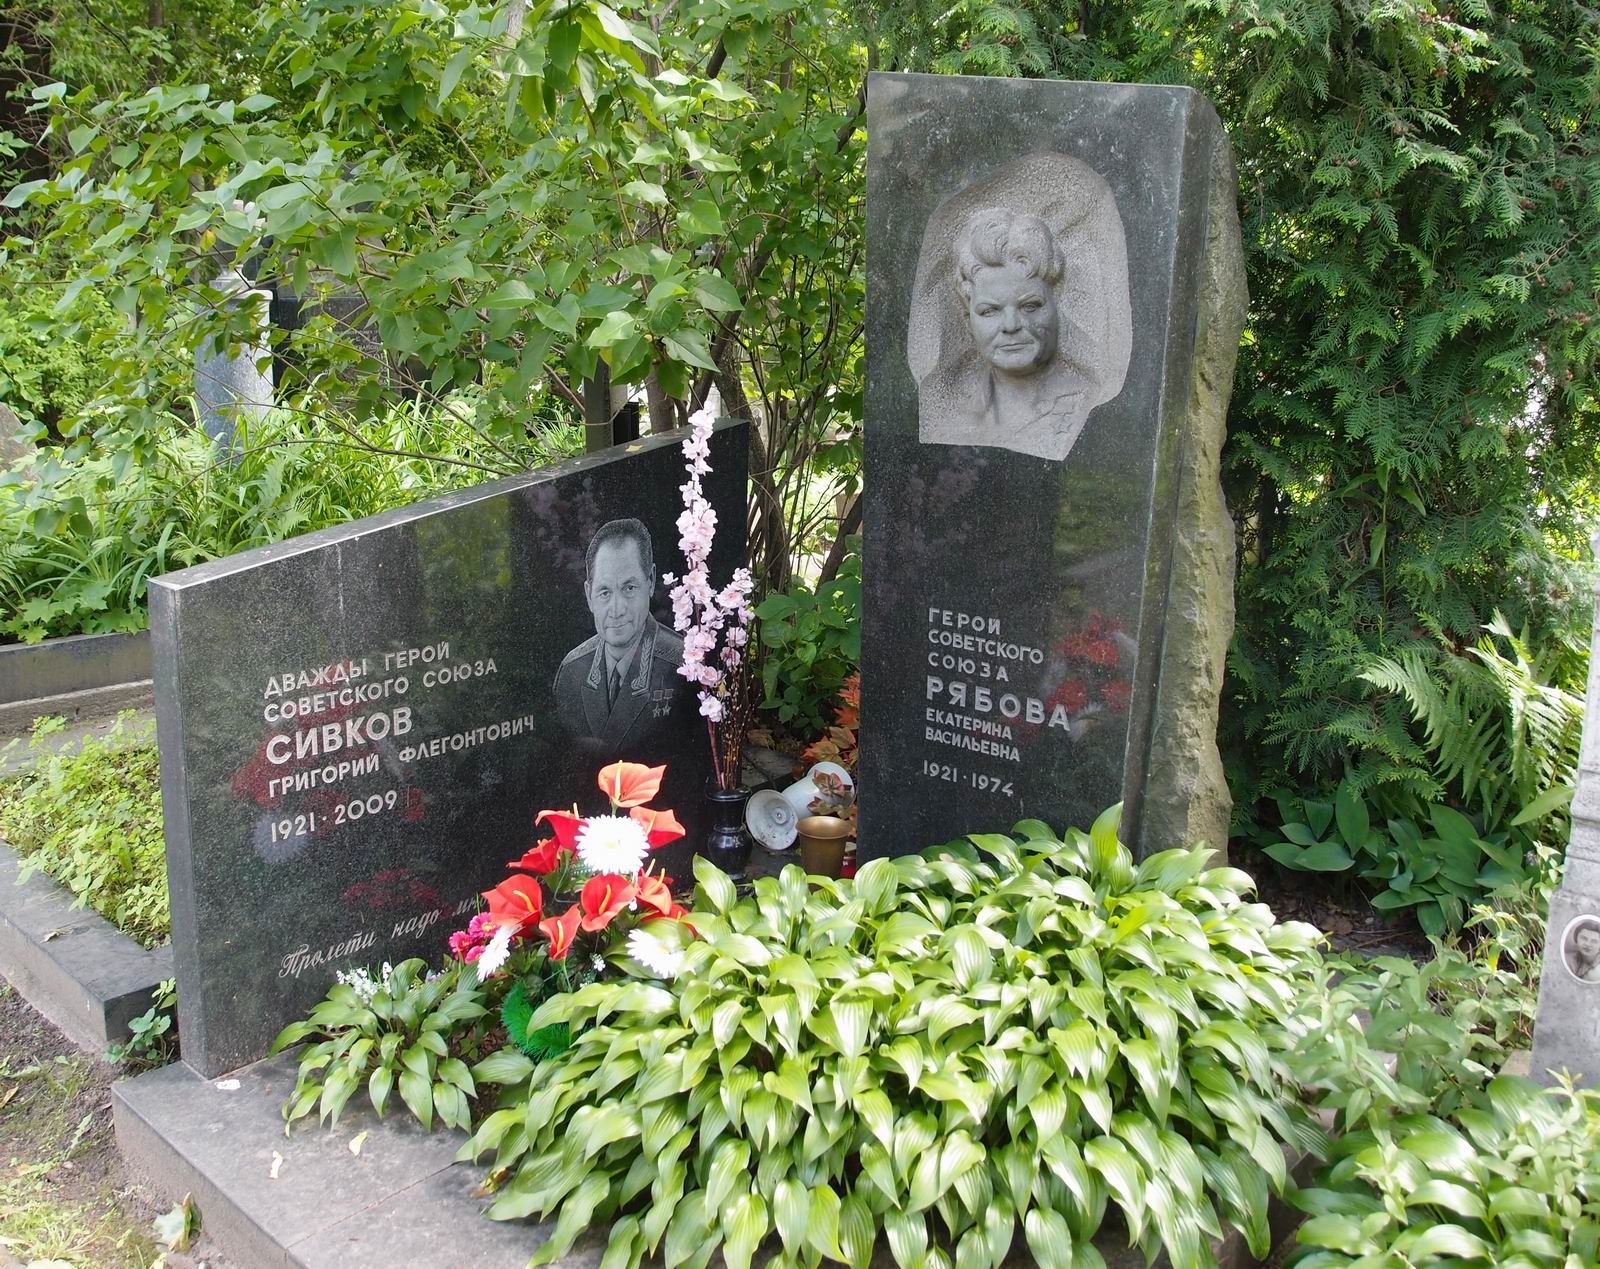 Памятник на могиле Рябовой Е.В. (1921-1974), ск. А.Елецкий, арх. А.Усачёв и Сивкова Г.Ф. (1921-2009), на Новодевичьем кладбище (3-60-42).